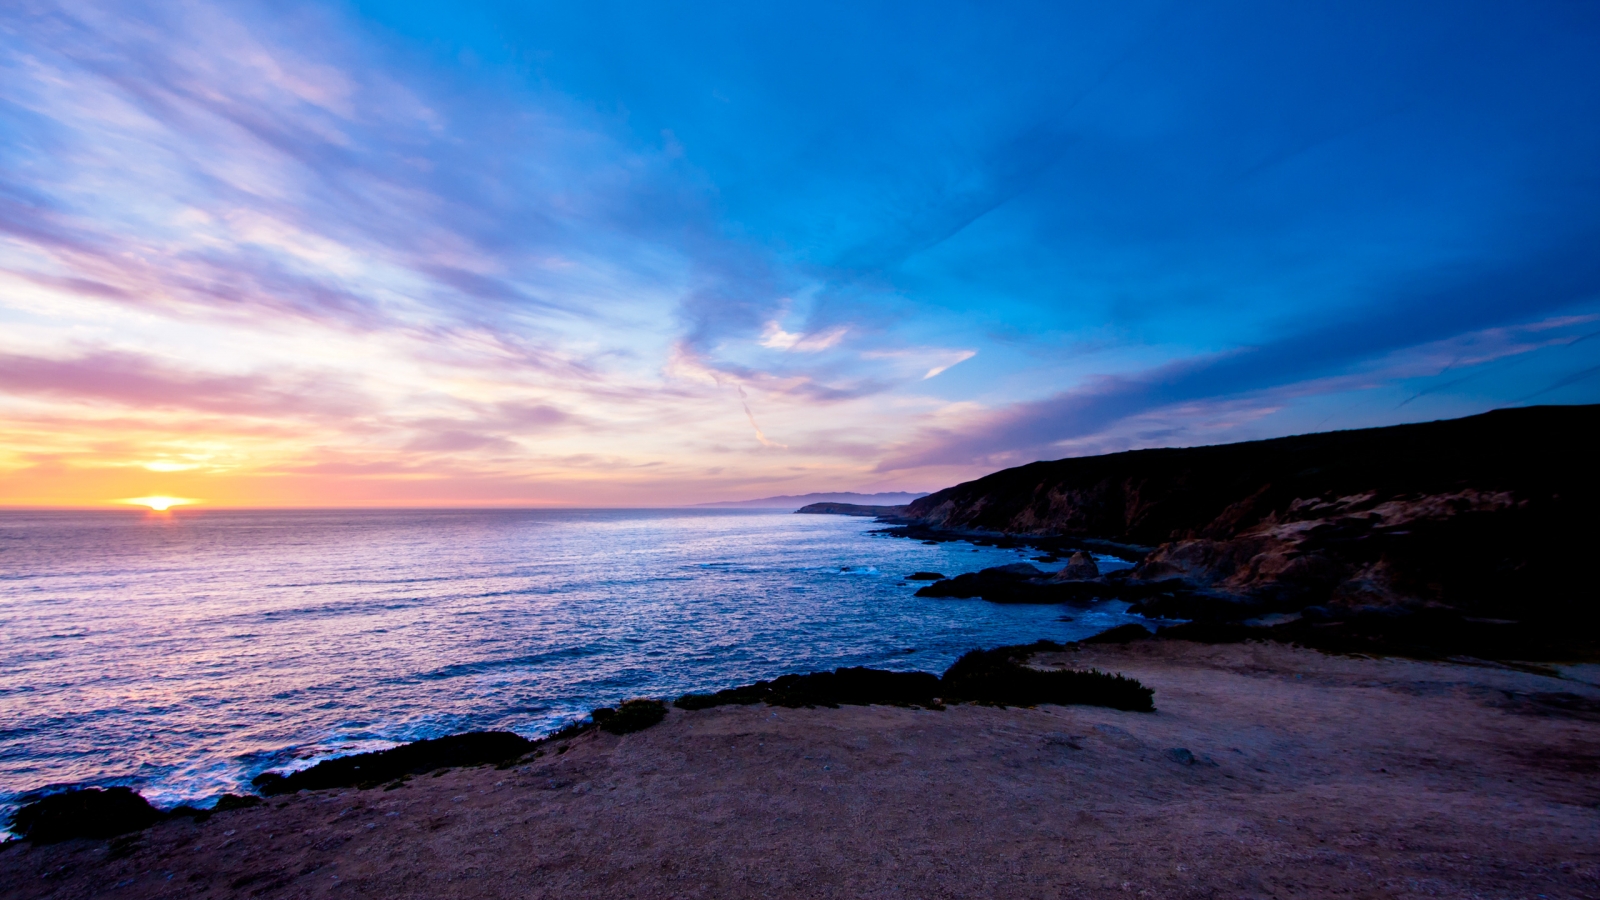 Bodega Head Sunset for 1600 x 900 HDTV resolution